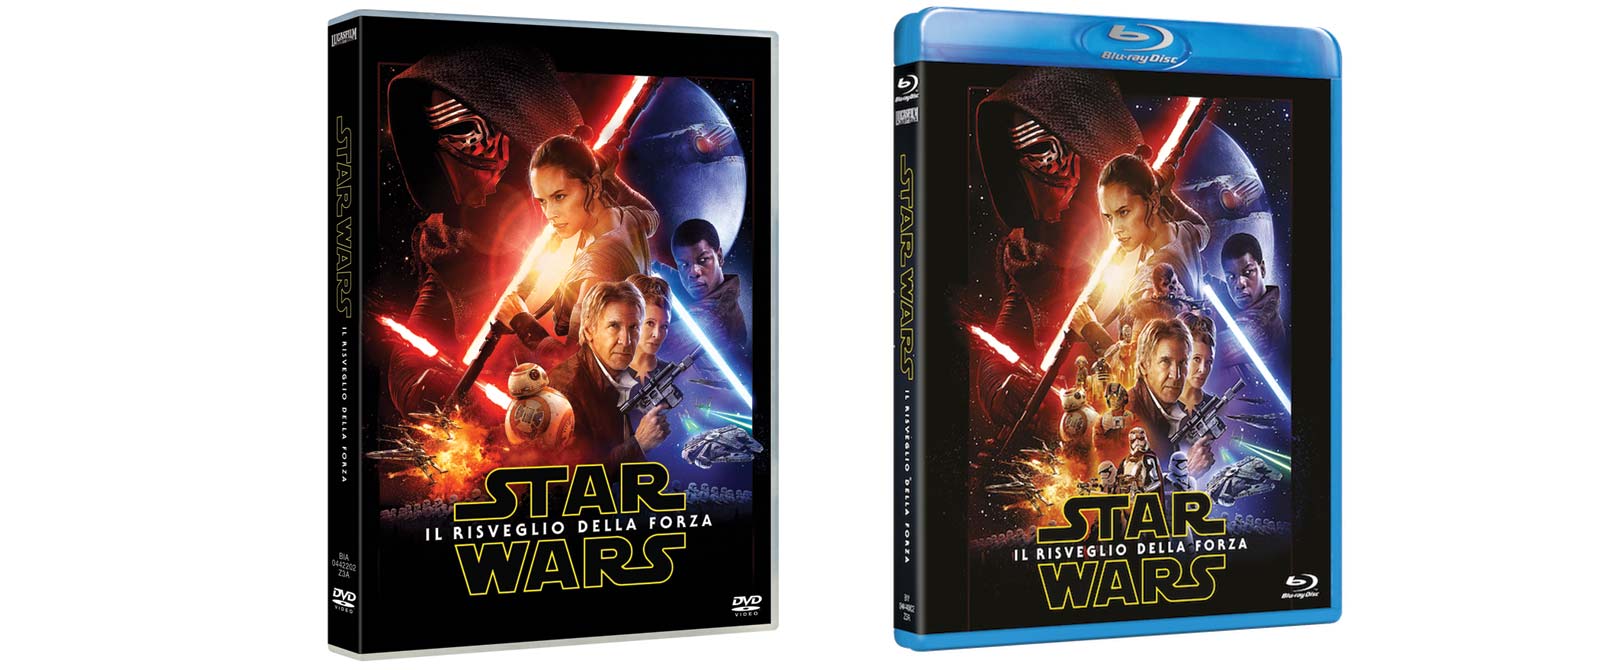 Star Wars: Il Risveglio della Forza IN DVD, Blu-ray